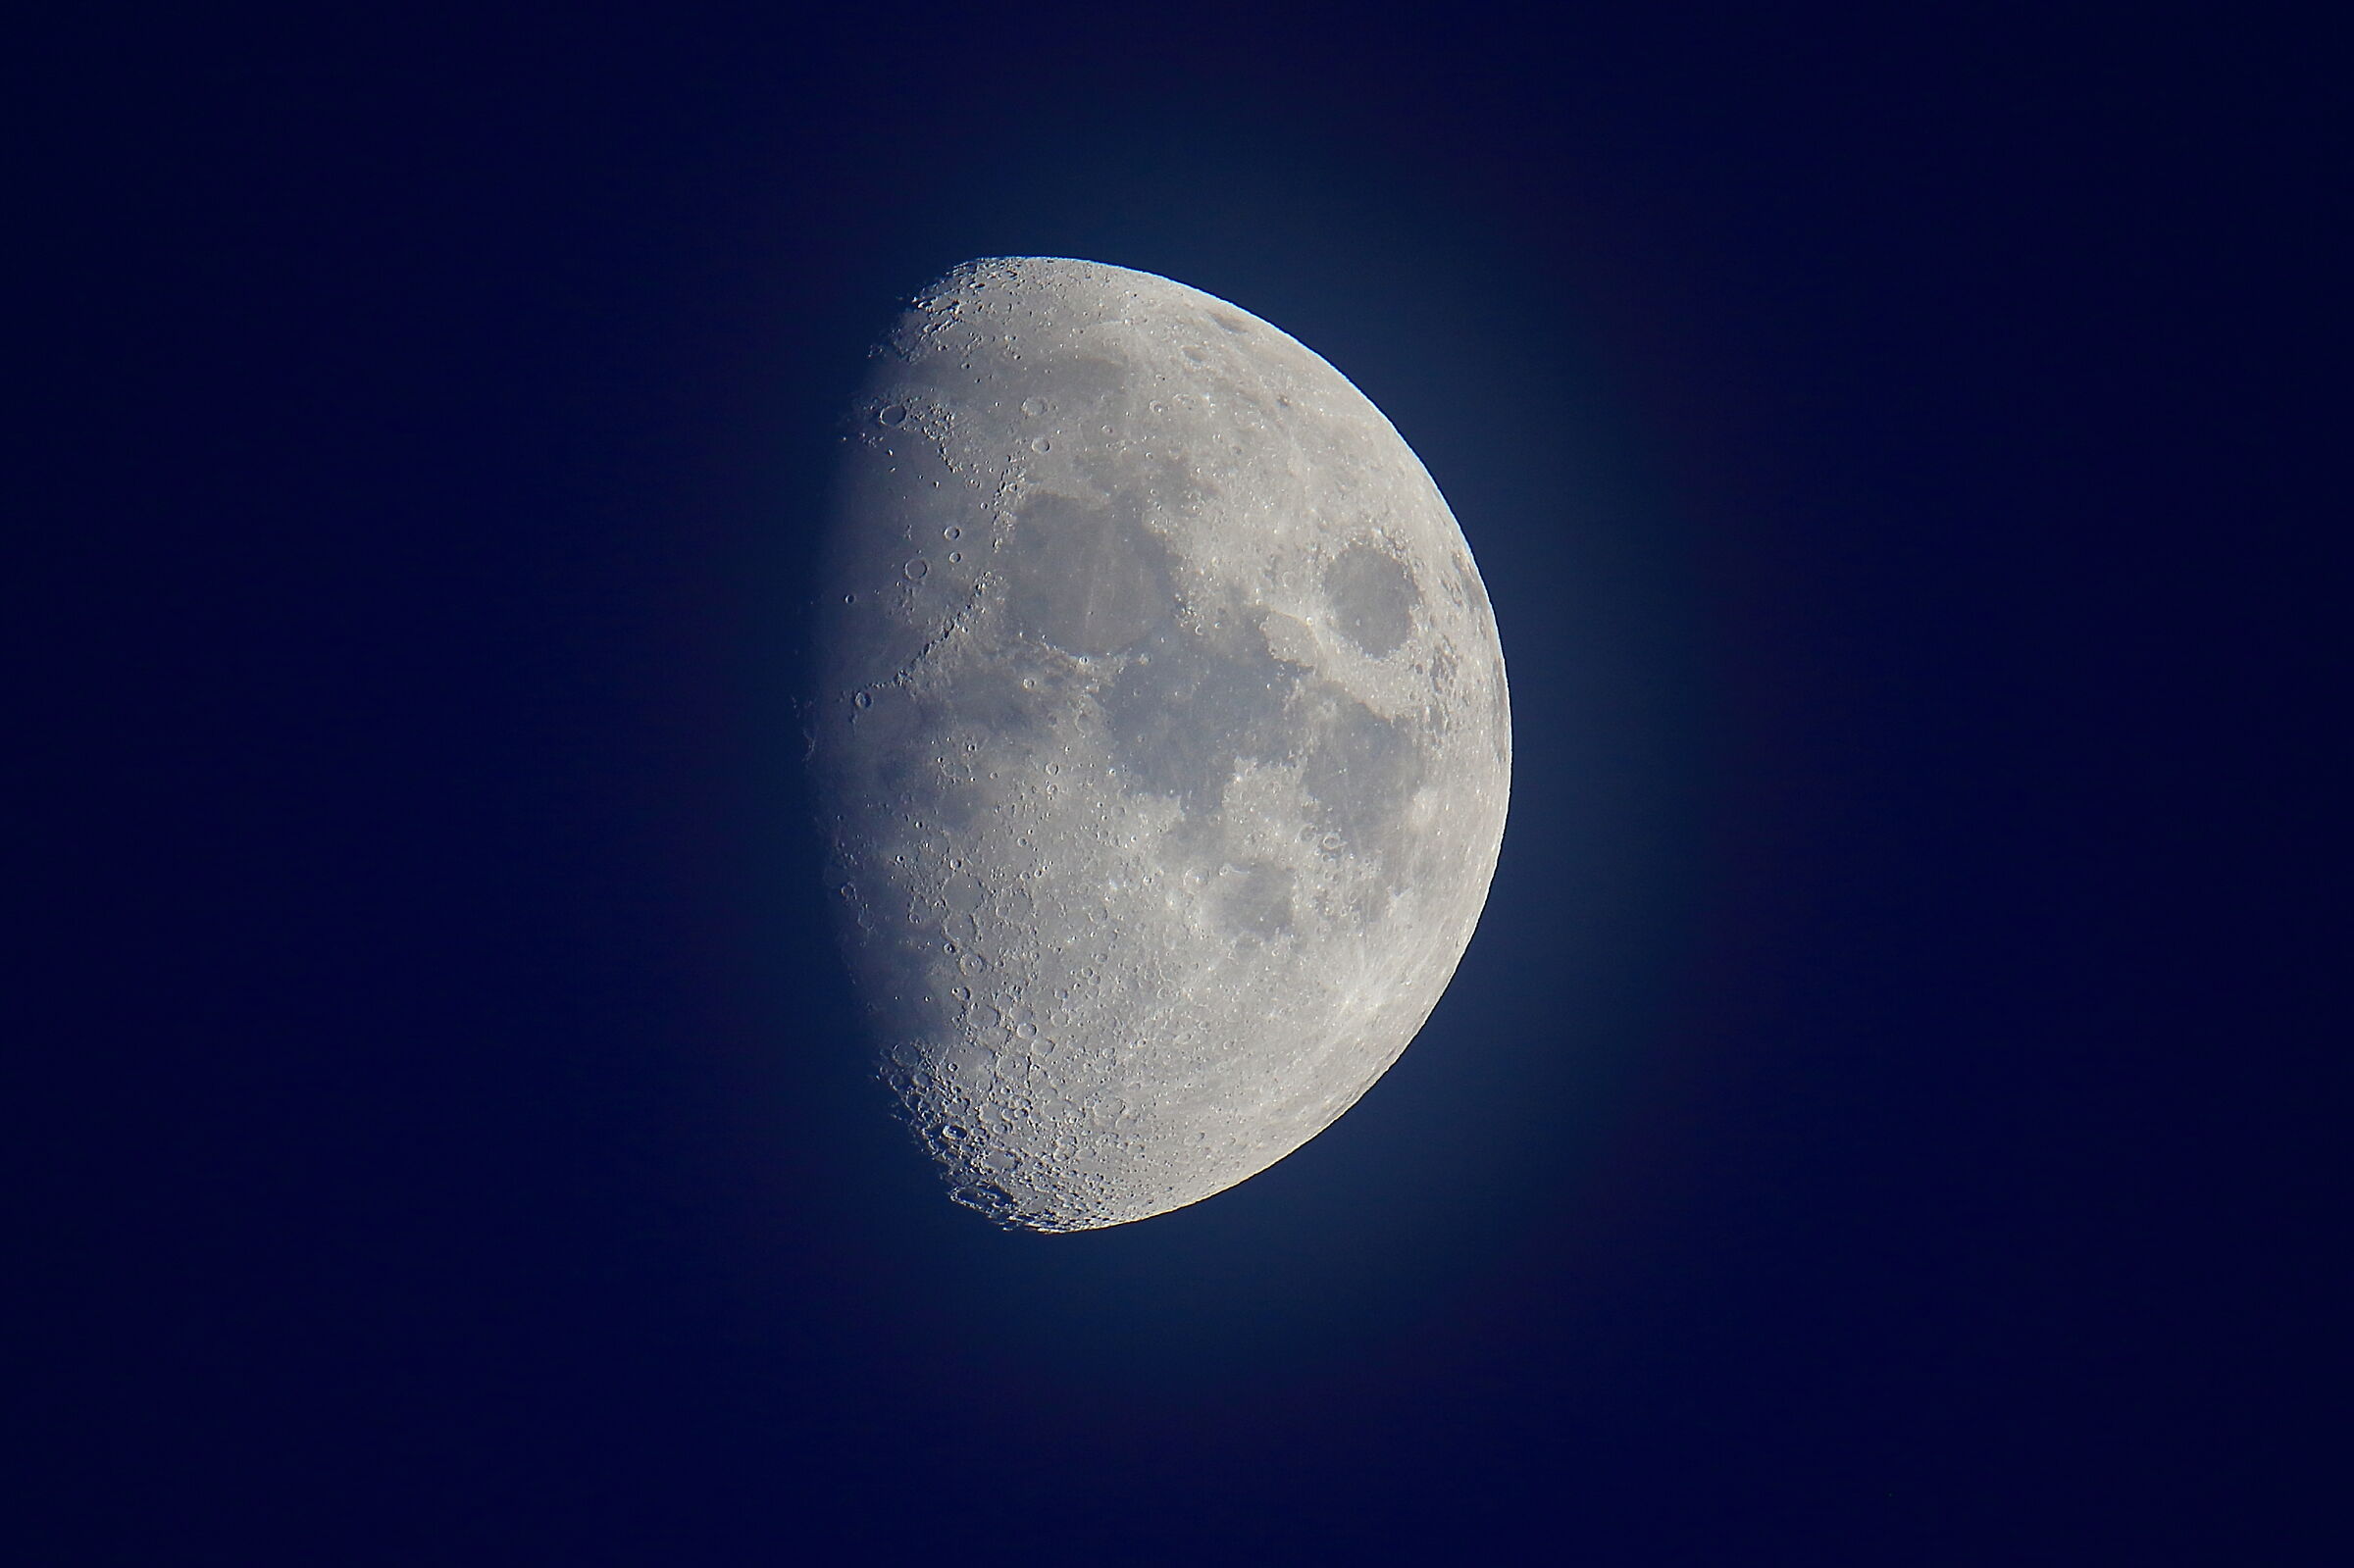 Tonight's moon (November 13, 2021 at 5 pm)...